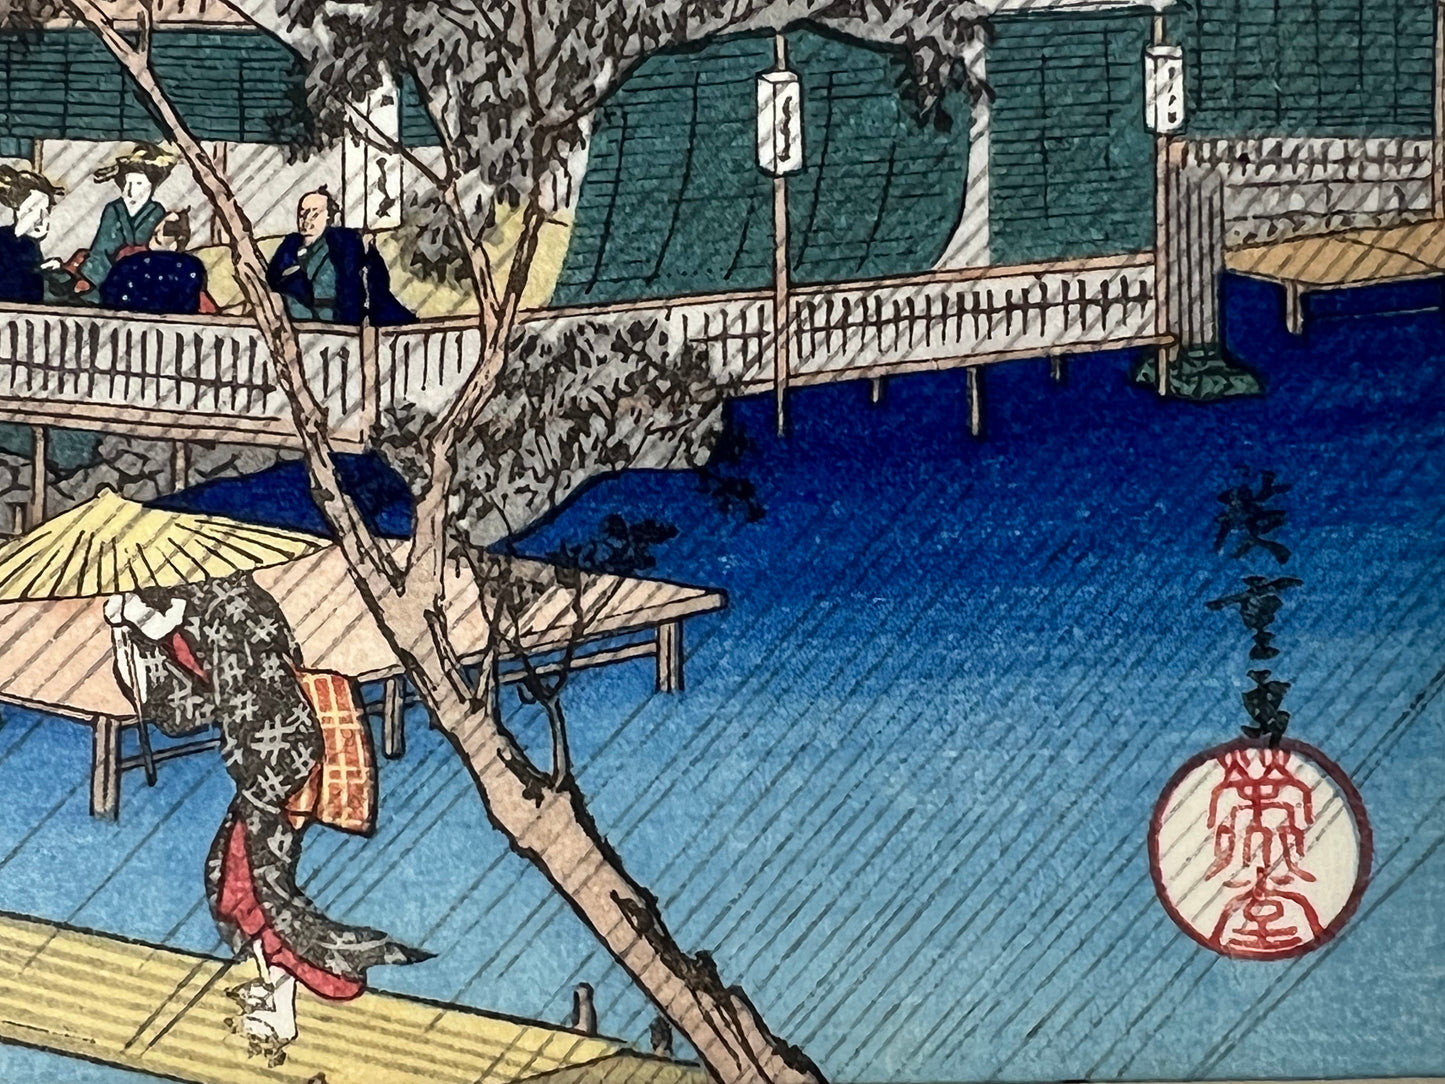 Japanese Woodblock Print Reproduction: By Hiroshige "Evening Rain at Tadasugawara" 1834